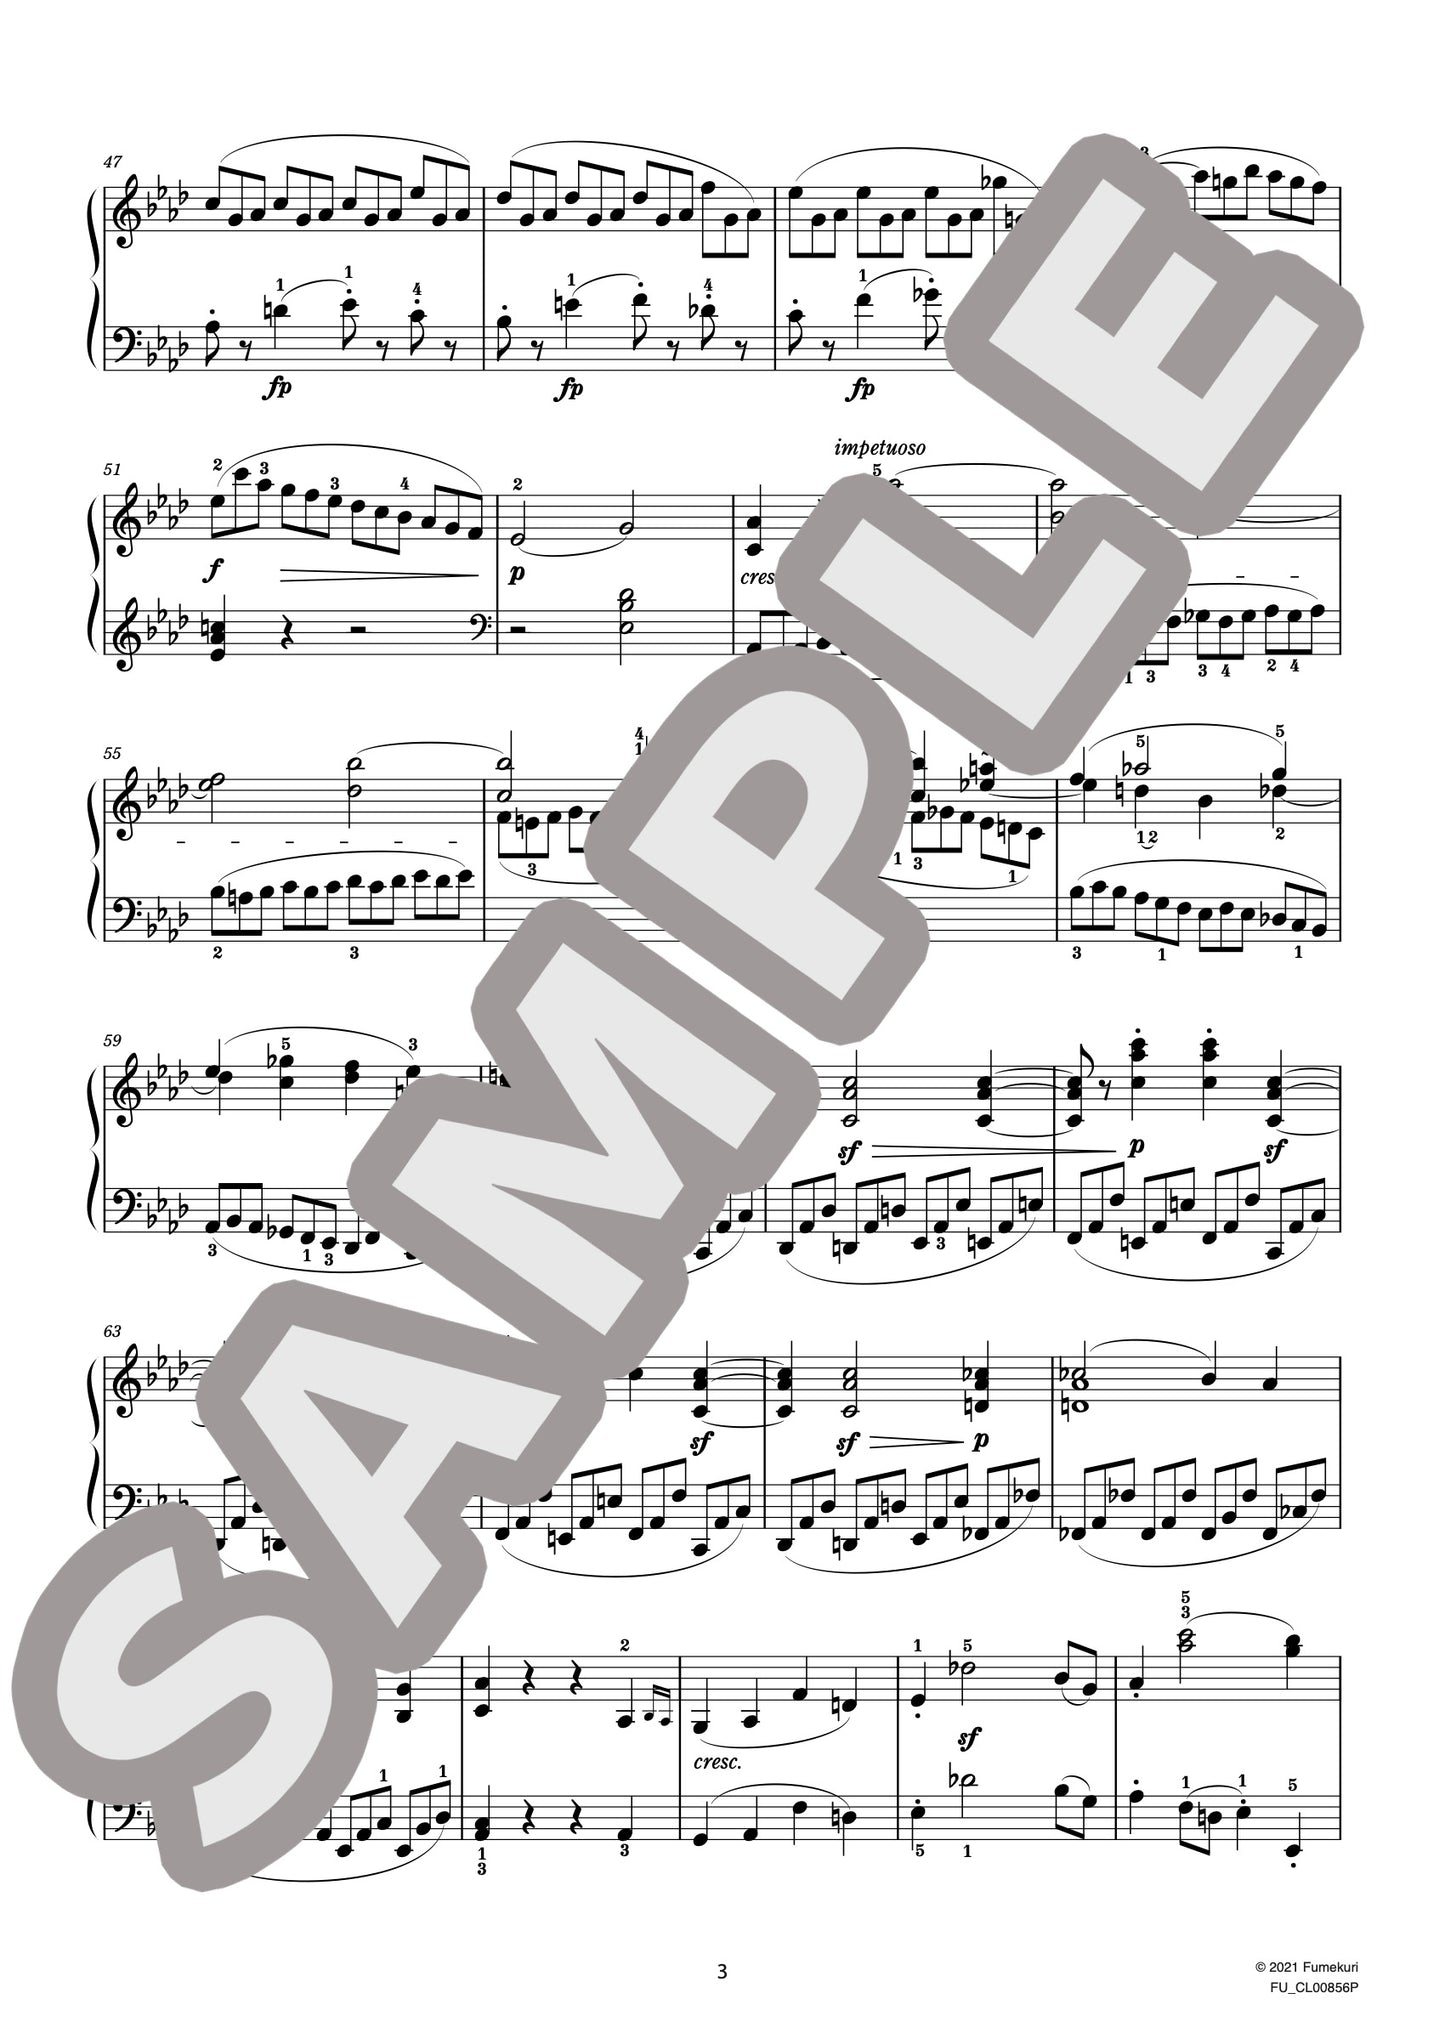 ソナタ 第3番 作品20 第3楽章 フィナーレ（HUMMEL) / クラシック・オリジナル楽曲【中上級】